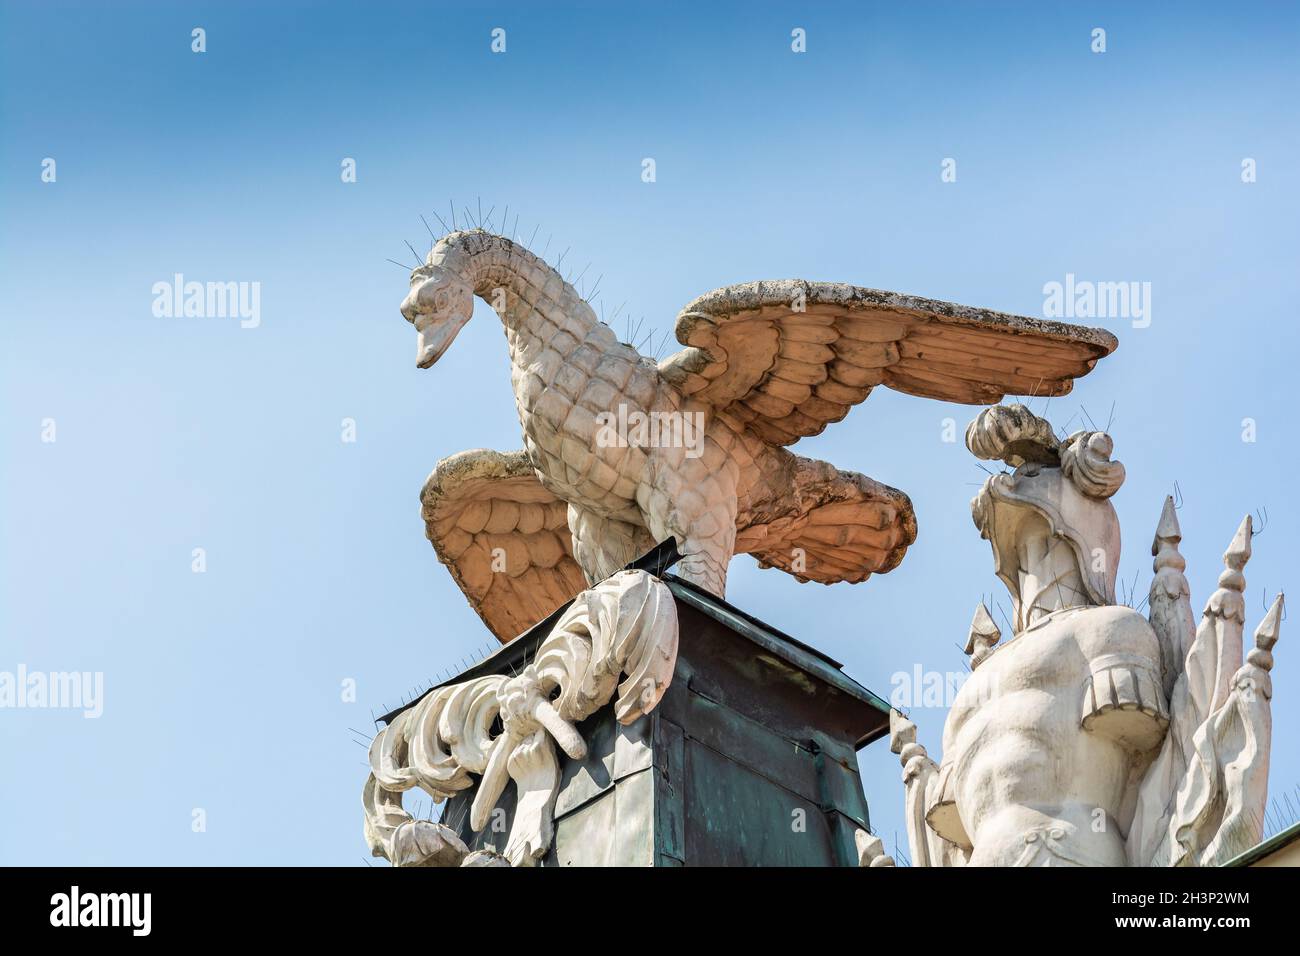 Posen, Polen - 09. August 2021. Statuen auf dem Dach der Kornicka Bibliothek - Biblioteka Kornicka in Palac Dzialynskich mit Schutz vor Tauben Stockfoto